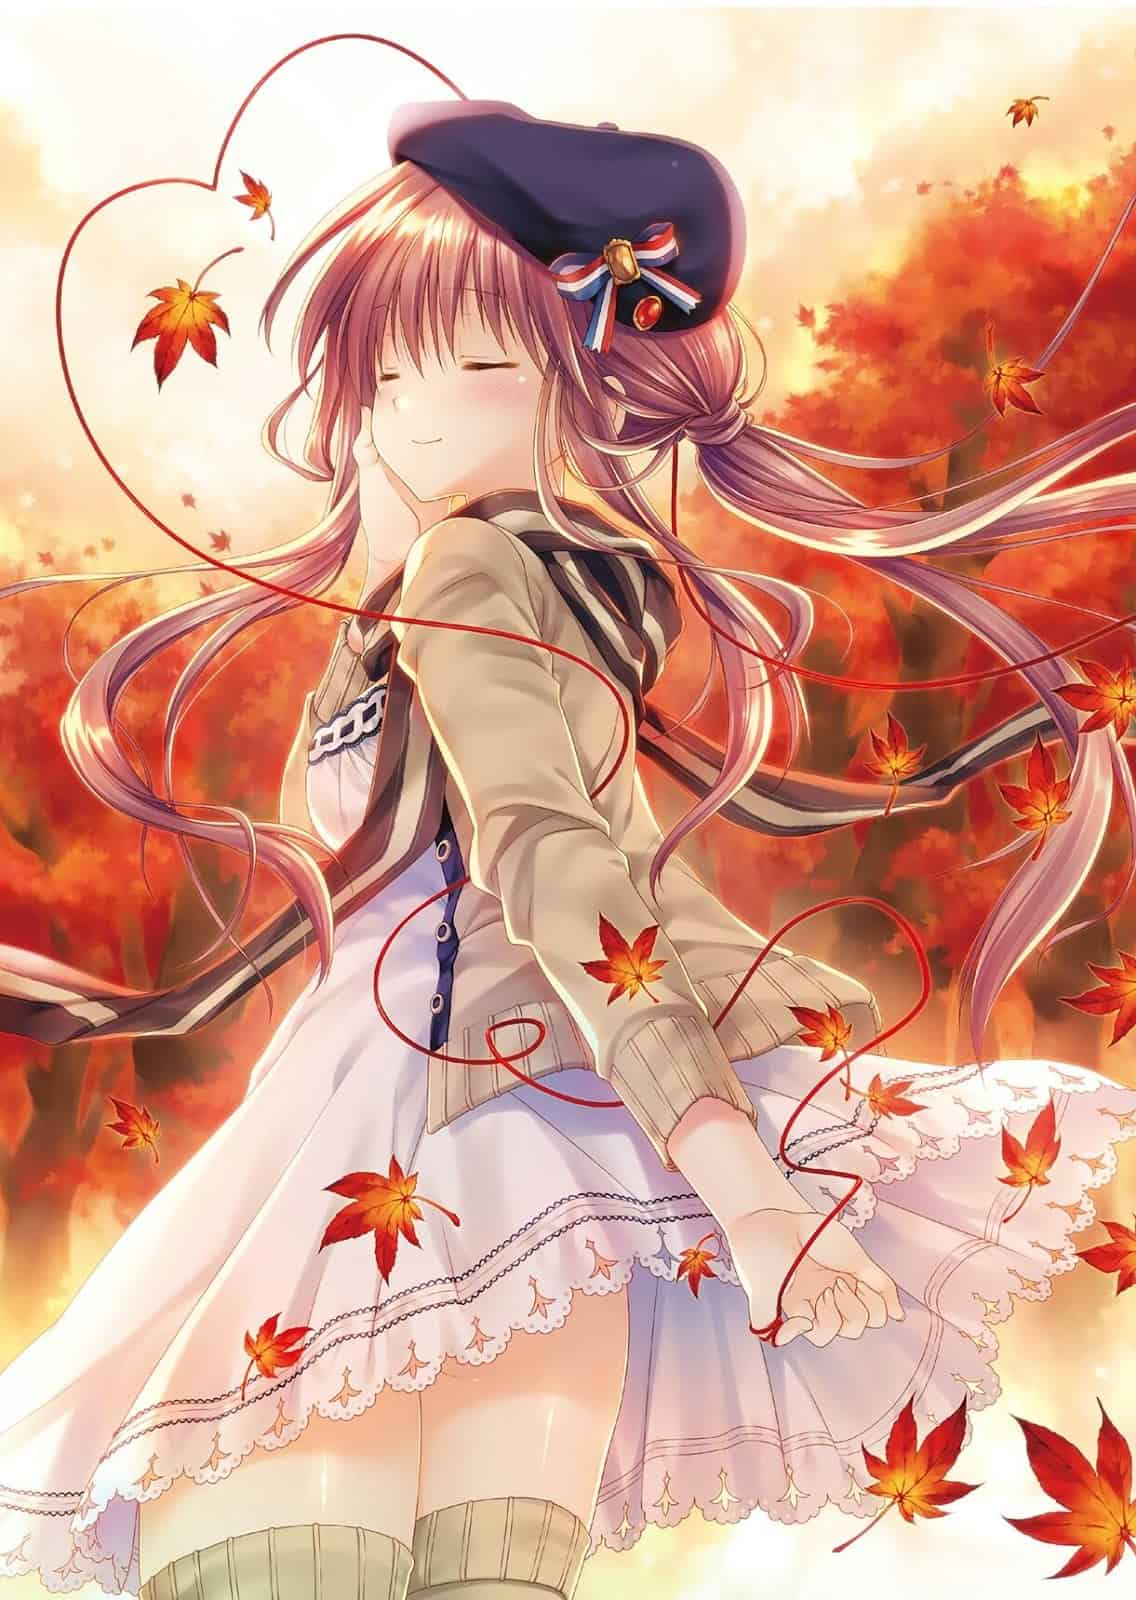 Mùa thu với sắc đỏ rực rỡ và se lạnh được ví như một trong những mùa đẹp nhất trong năm. Cùng chiêm ngưỡng những ảnh anime mùa thu đẹp nhất với những cánh lá rơi và những cô nàng anime trong bộ trang phục ấm áp.